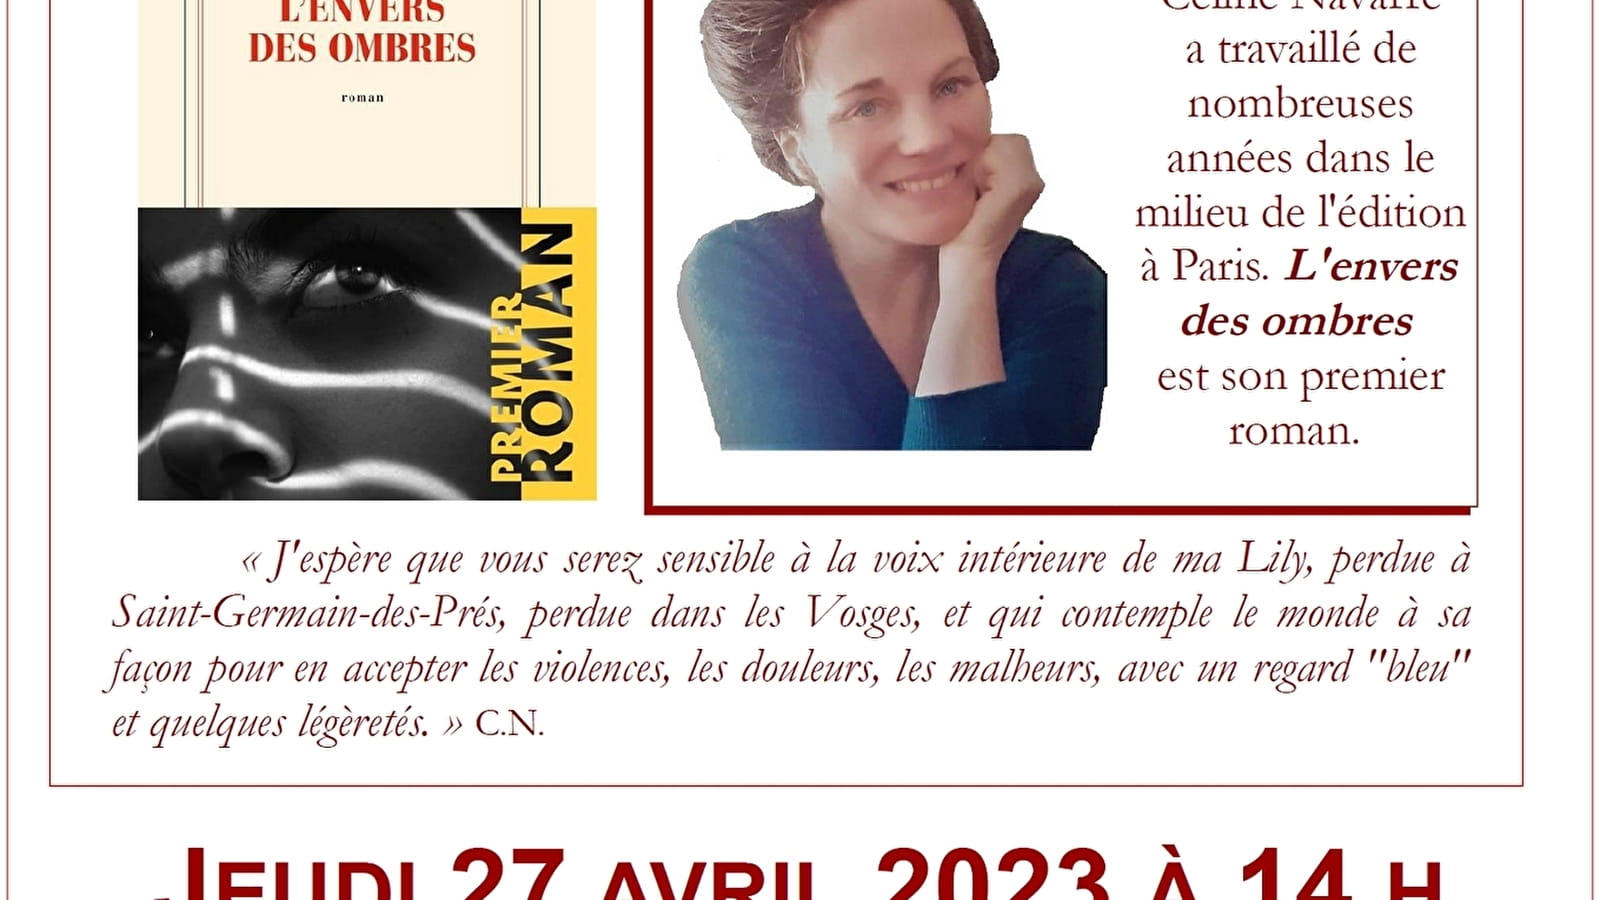 Café littéraire - Lecture-rencontre avec Céline NAVARRE